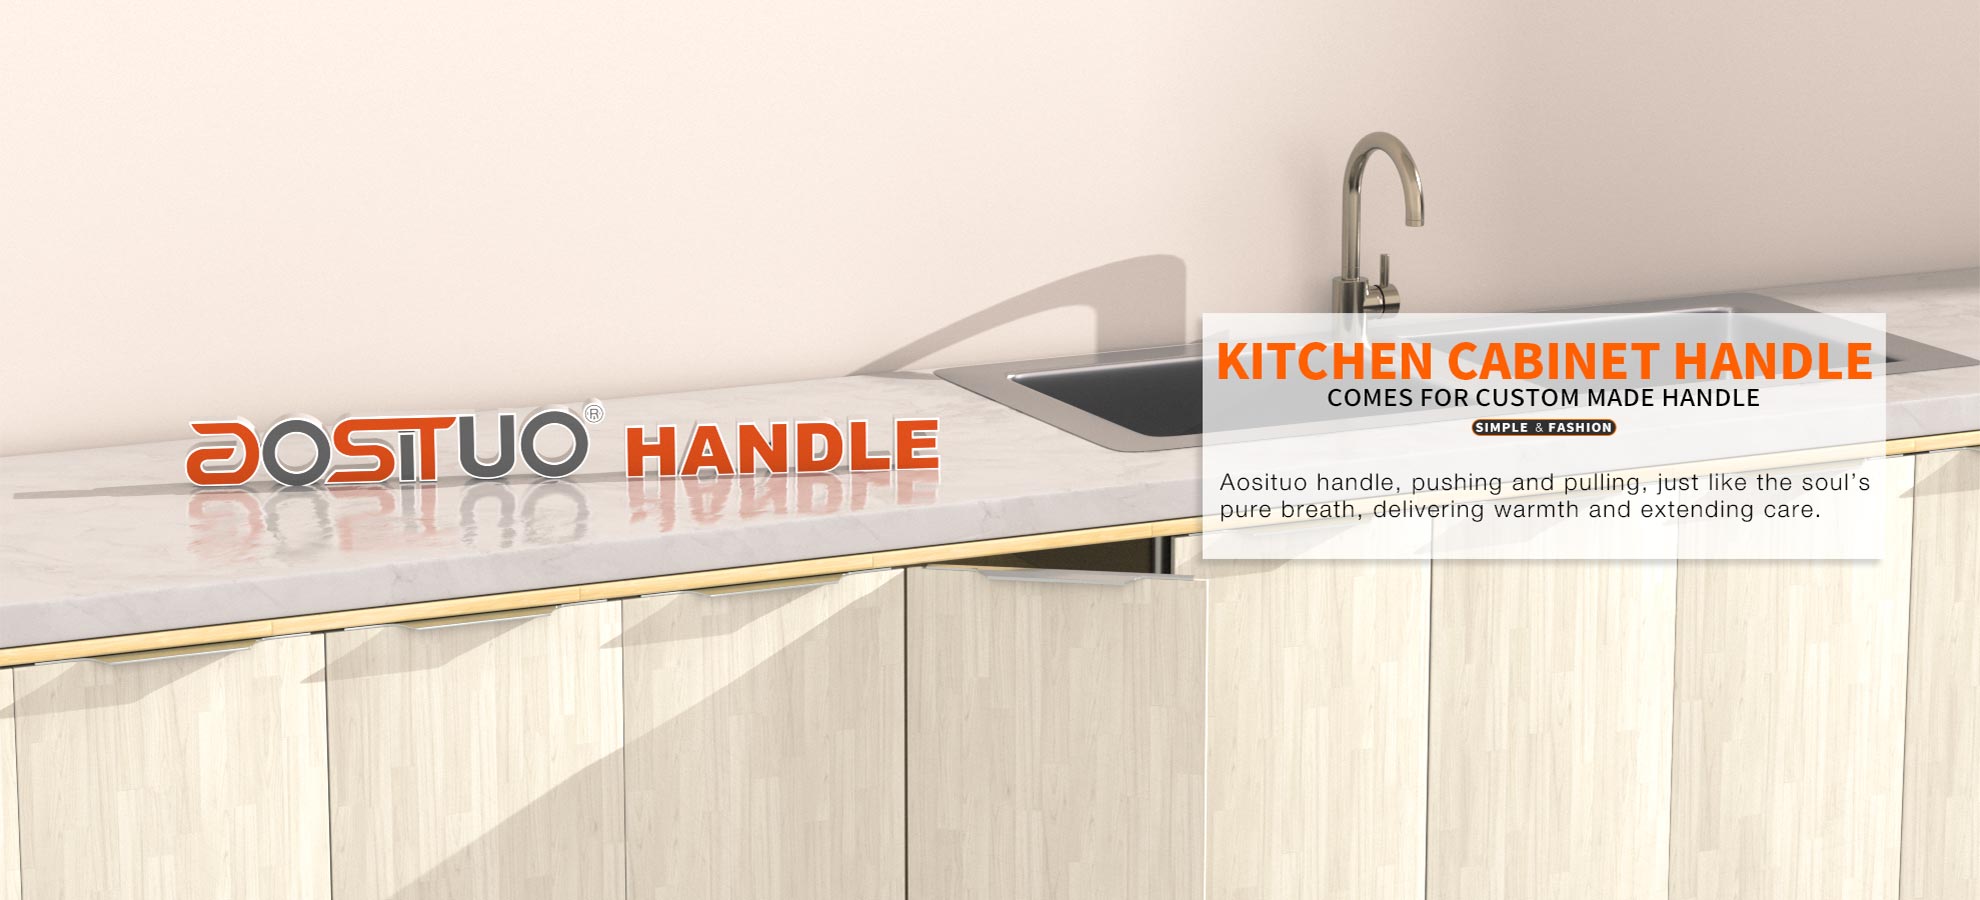 kitchen cabinet handle